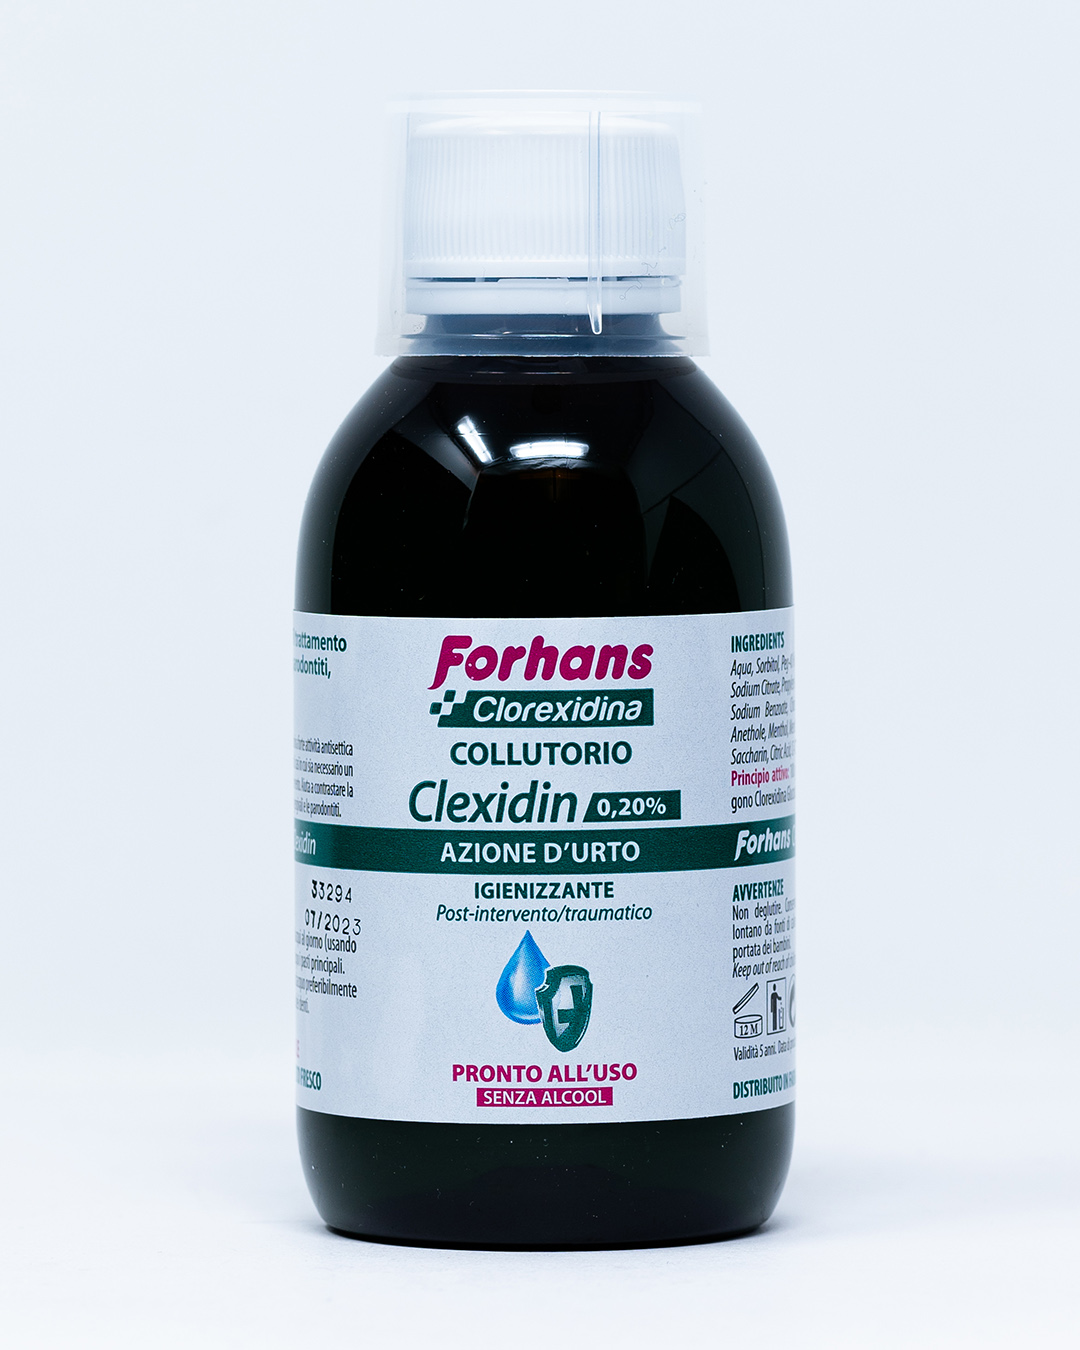 Forhans Clorexidina Collutorio Clexidin Azione d'Urto 0,20% - 200 ml